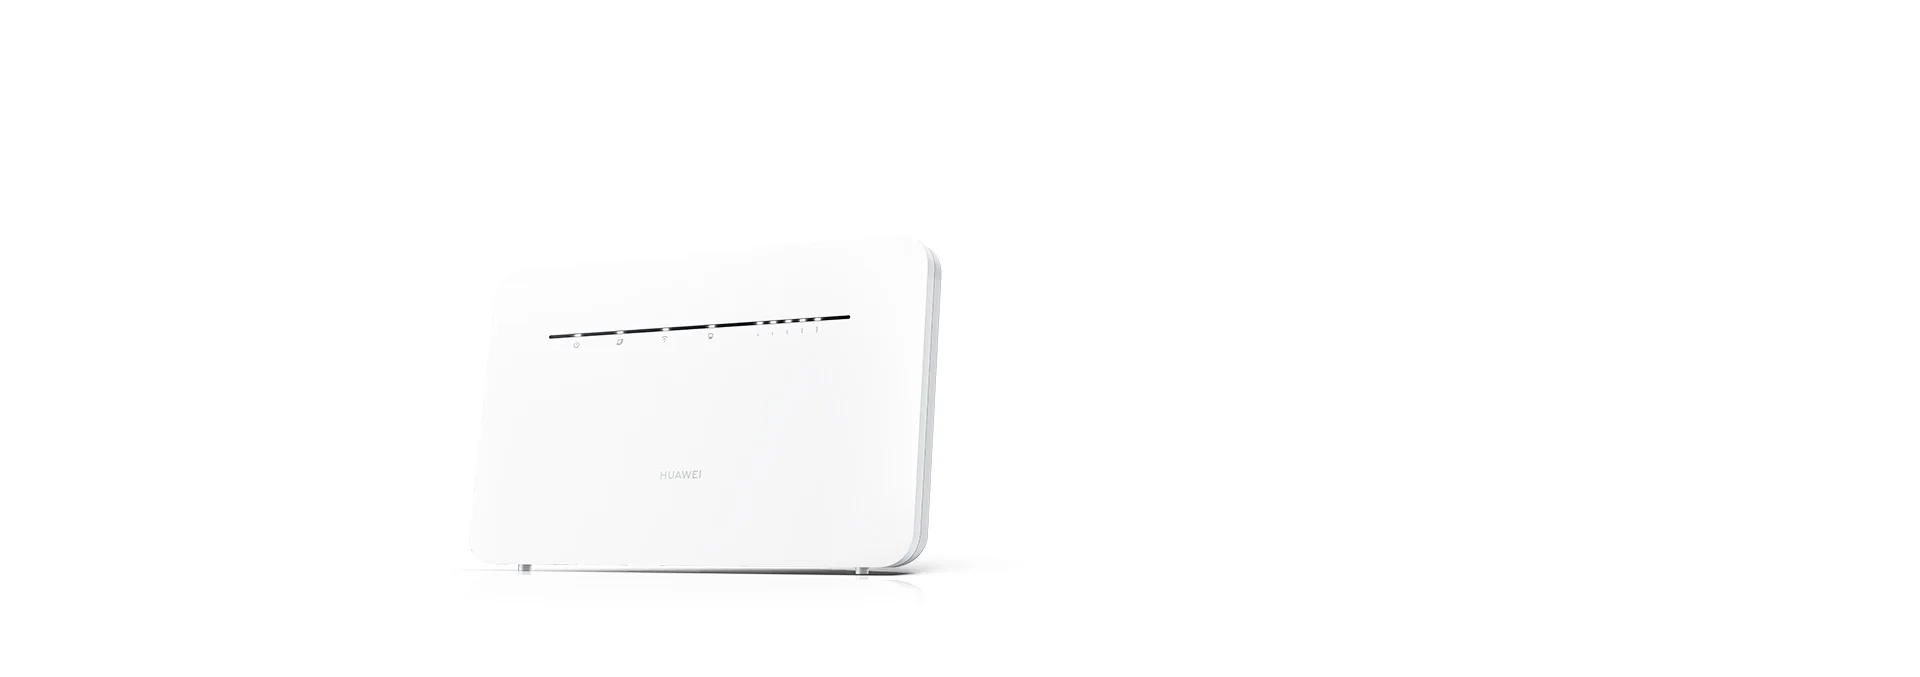 HUAWEI маршрутизатор сети wifi удлинитель Портативный 4G sim-карта для обеспечения 4GRouter-3pro 4G Router-2pro B316-855 4g усилитель сигнала